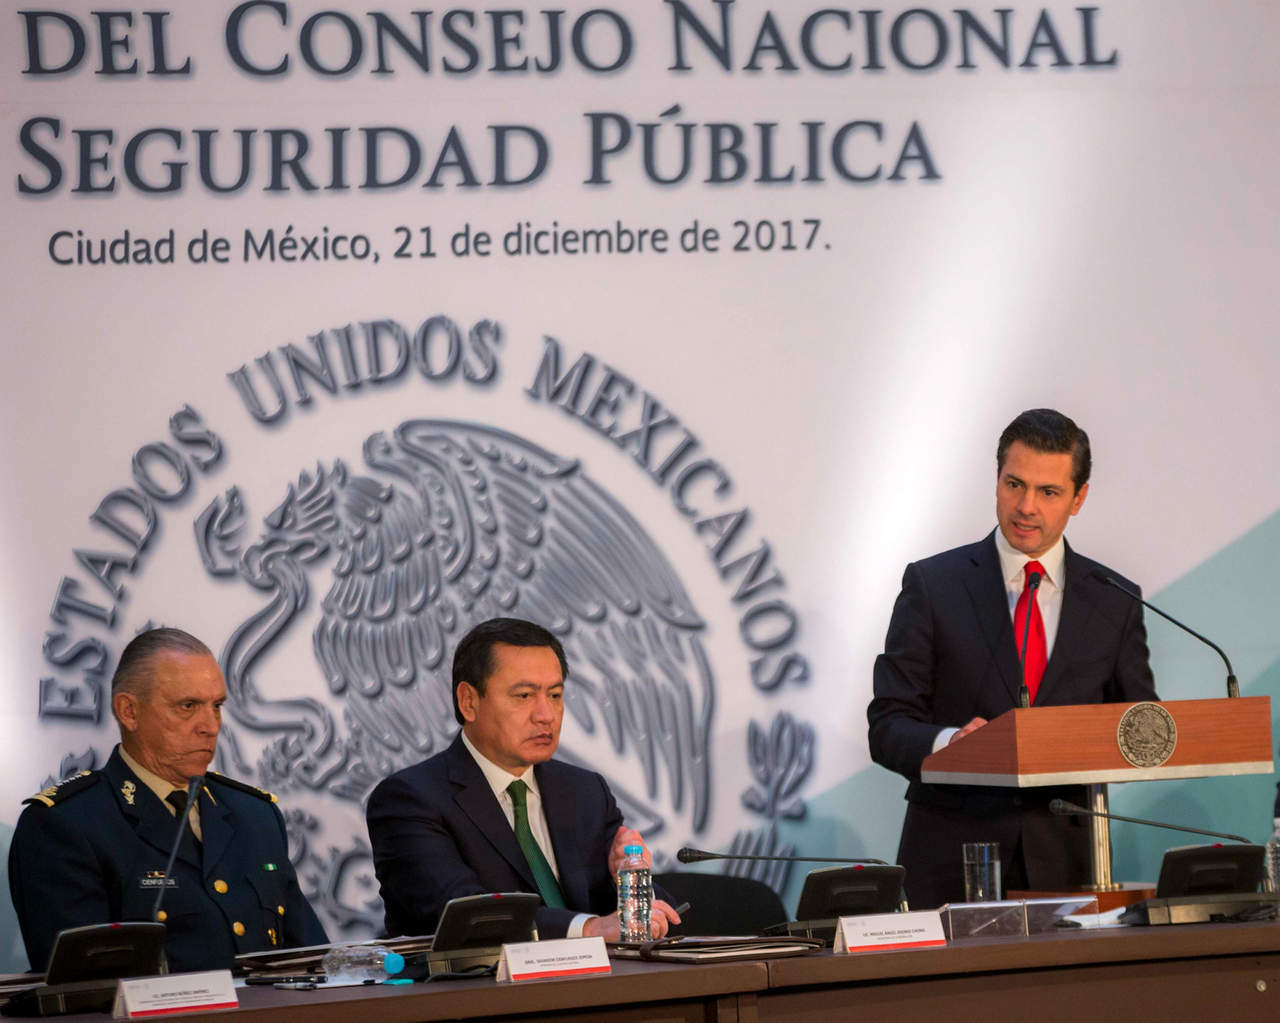 El presidente de la República, Enrique Peña Nieto, promulgó ayer la polémica Ley de Seguridad Interior que legaliza y perpetúa la presencia de las Fuerzas Armadas en labores de seguridad pública; no obstante, será la Suprema Corte de Justicia de la Nación la que decida sobre su constitucionalidad. (NOTIMEX)
